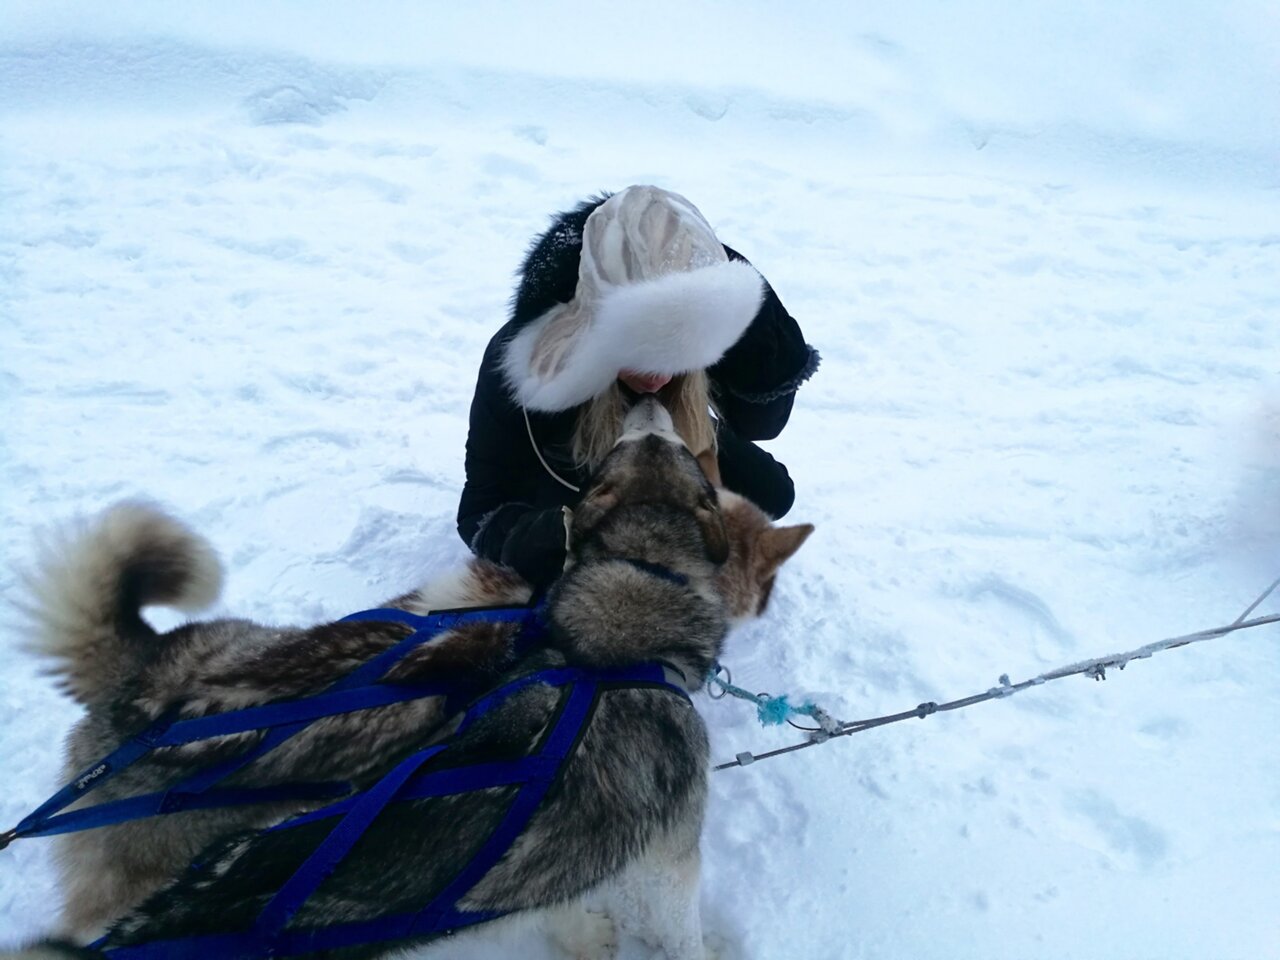 Kakslauttanen arctic resort husky sledding